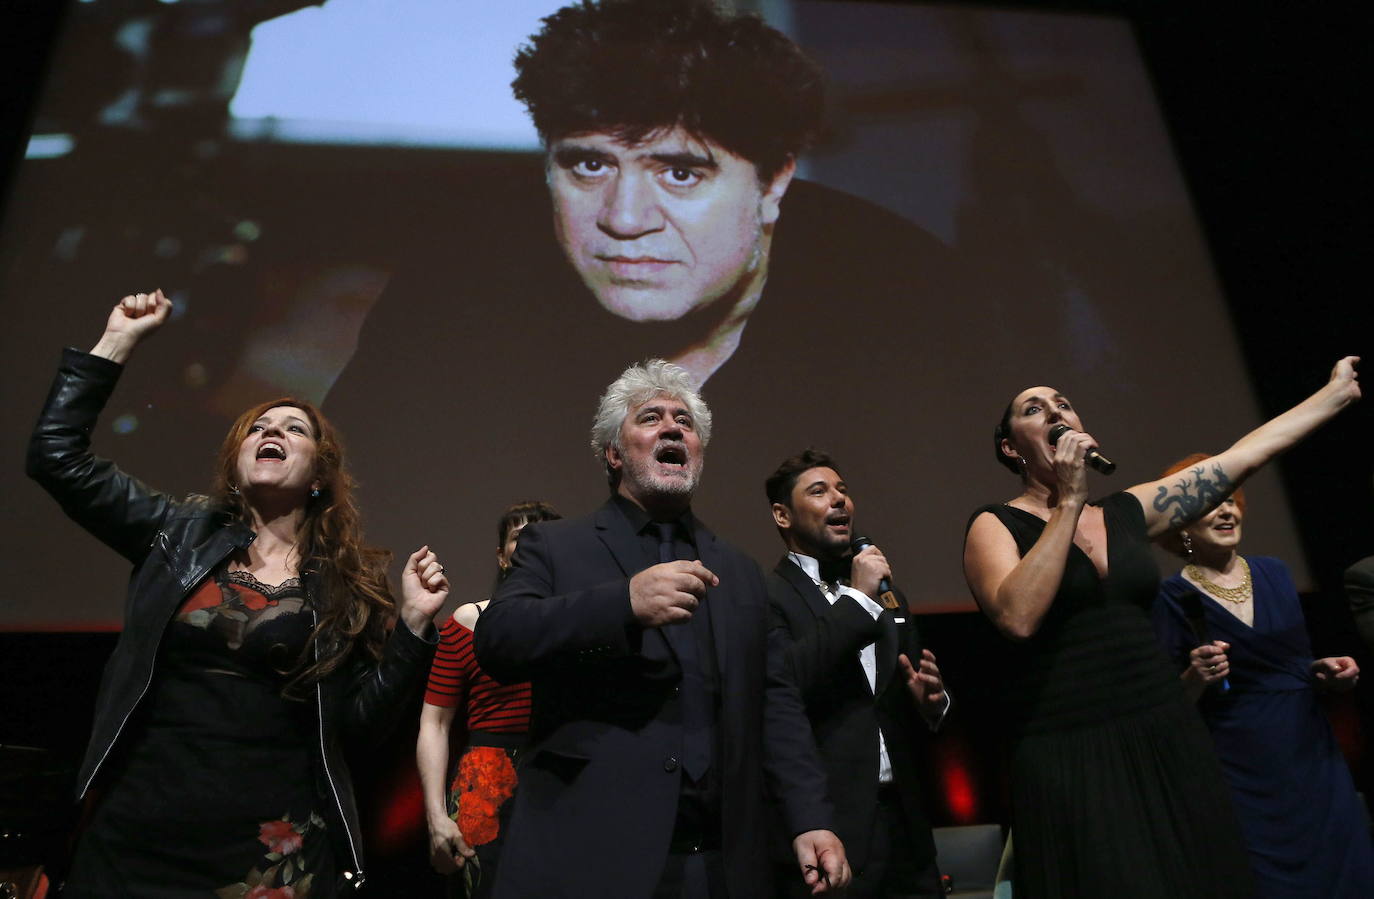 El cineasta manchego cumple 70 años con dos Óscar en su haber y varios premios Goya. Acaba de estrenar su última película 'Dolor y Gloria', en la que Antonio Banderas interpreta al propio Pedro Almodóvar.